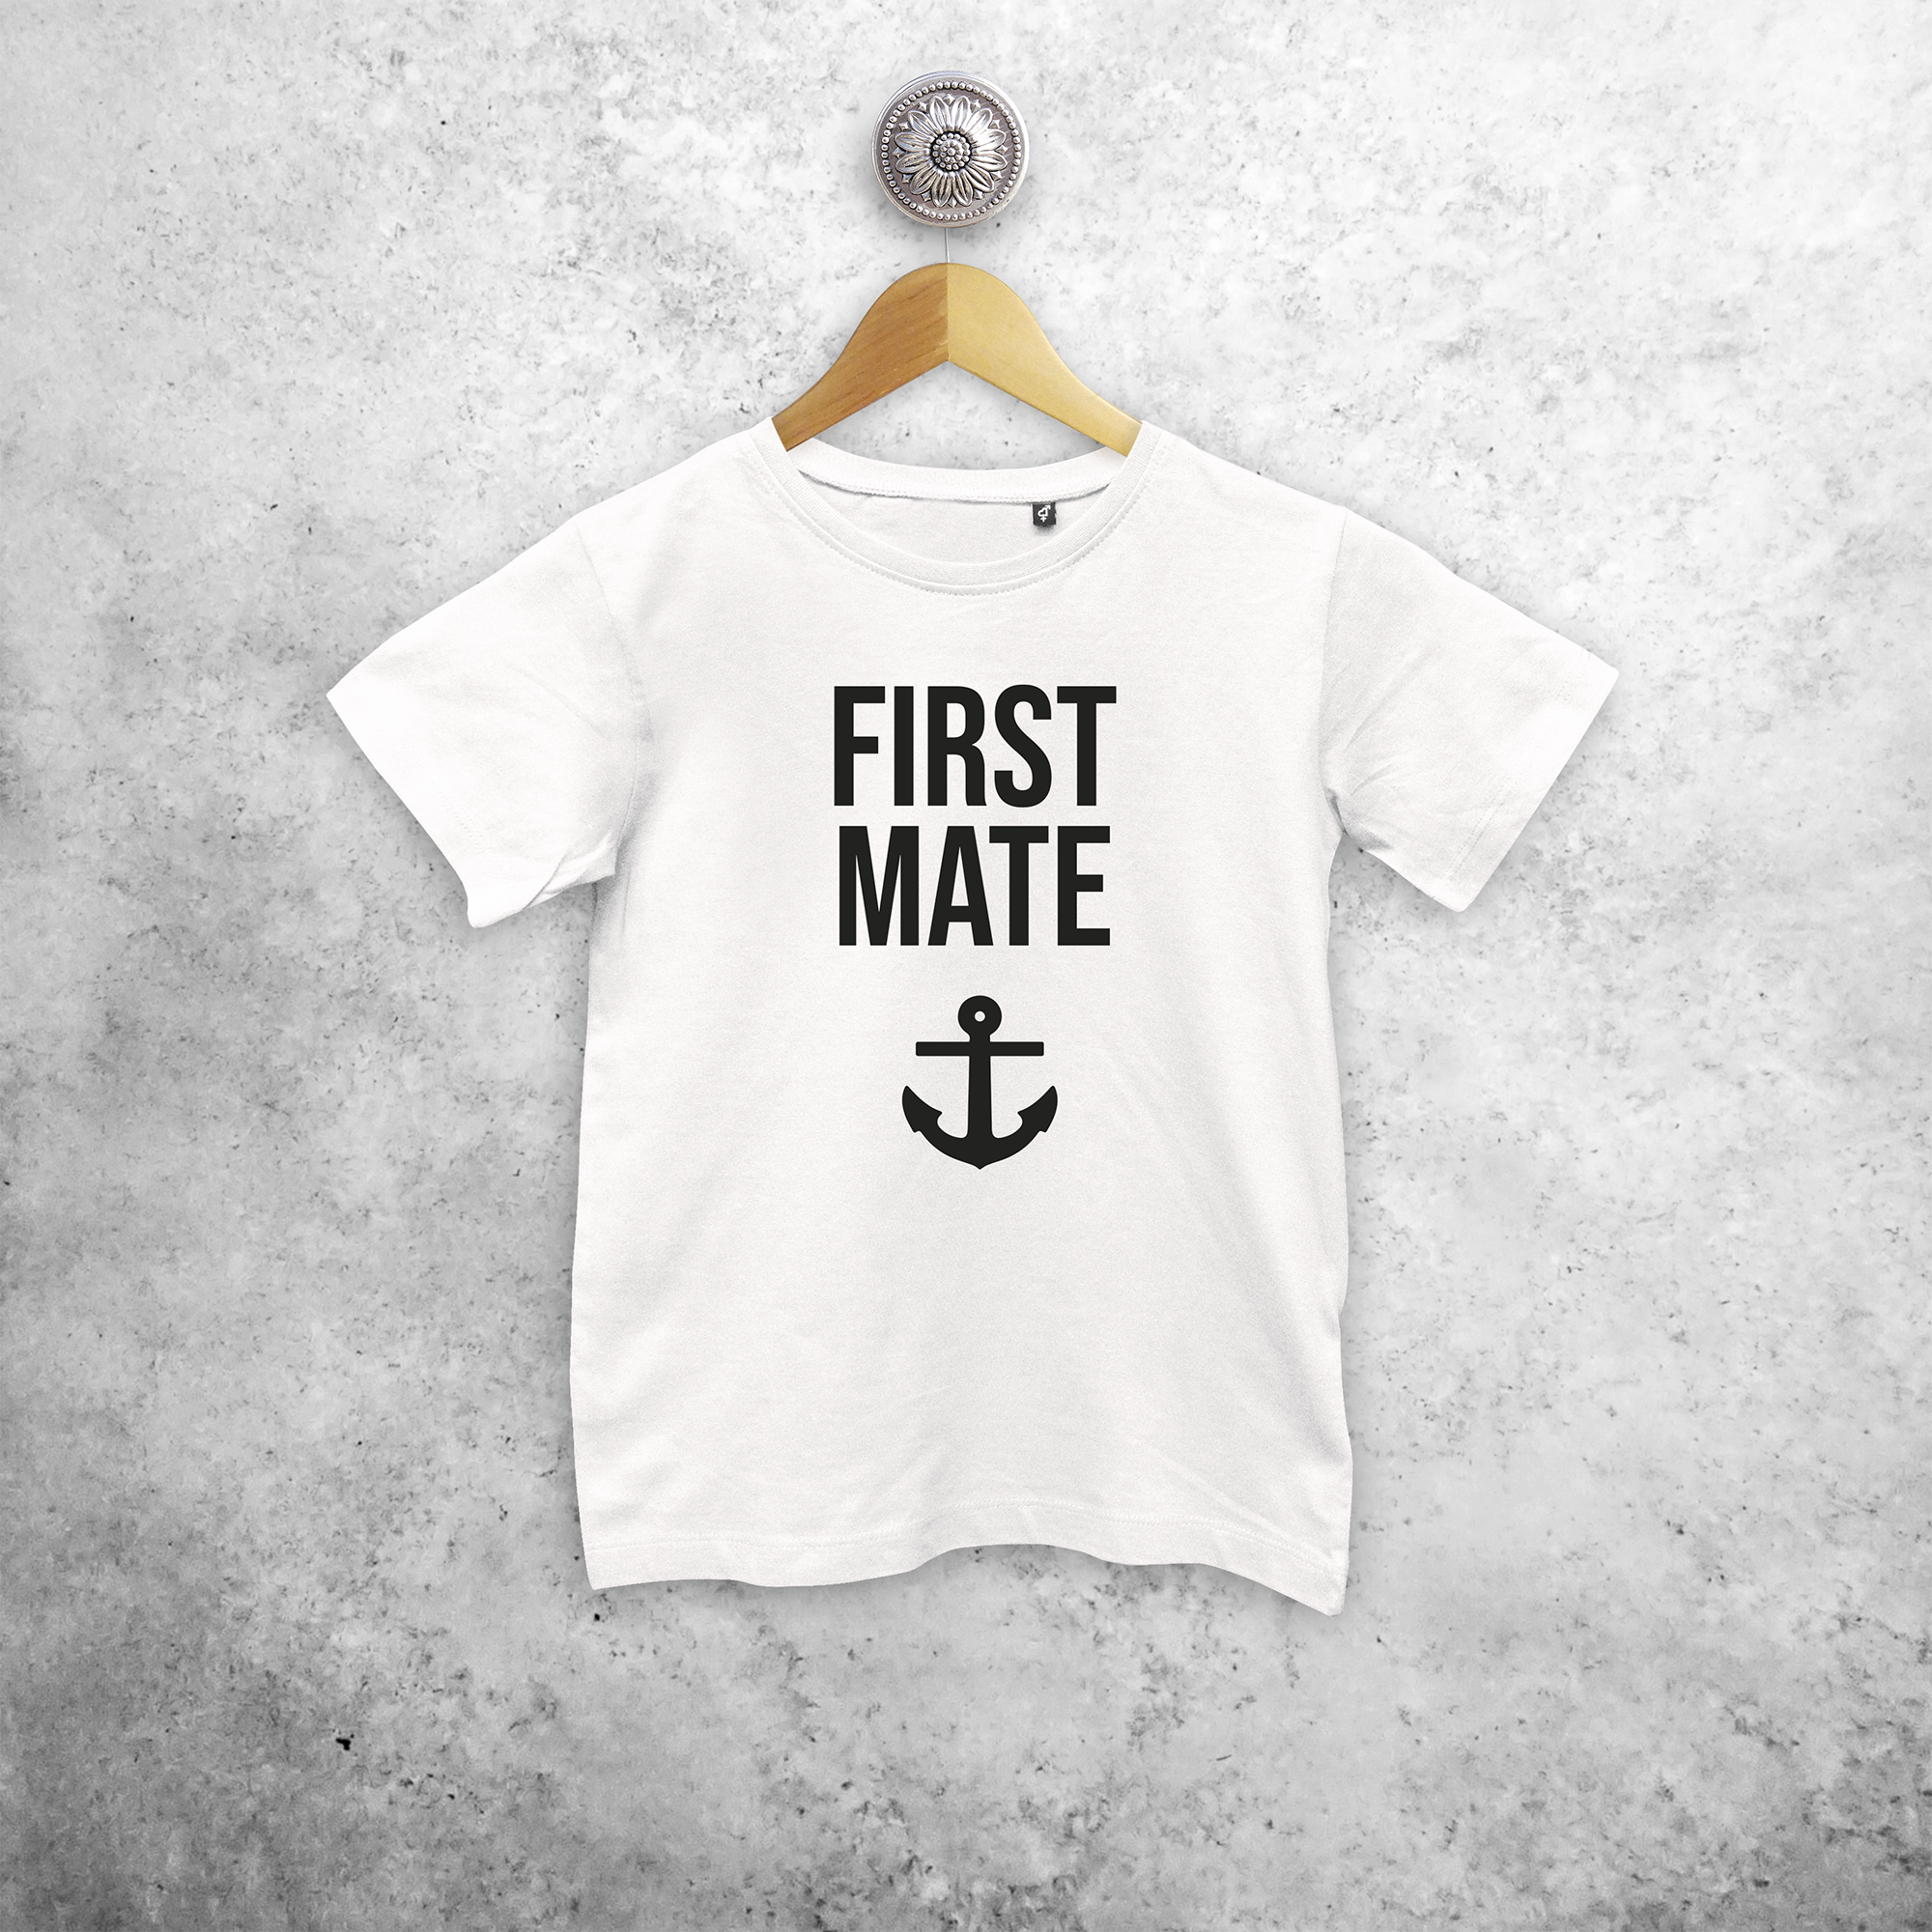 'First mate' kids shortsleeve shirt